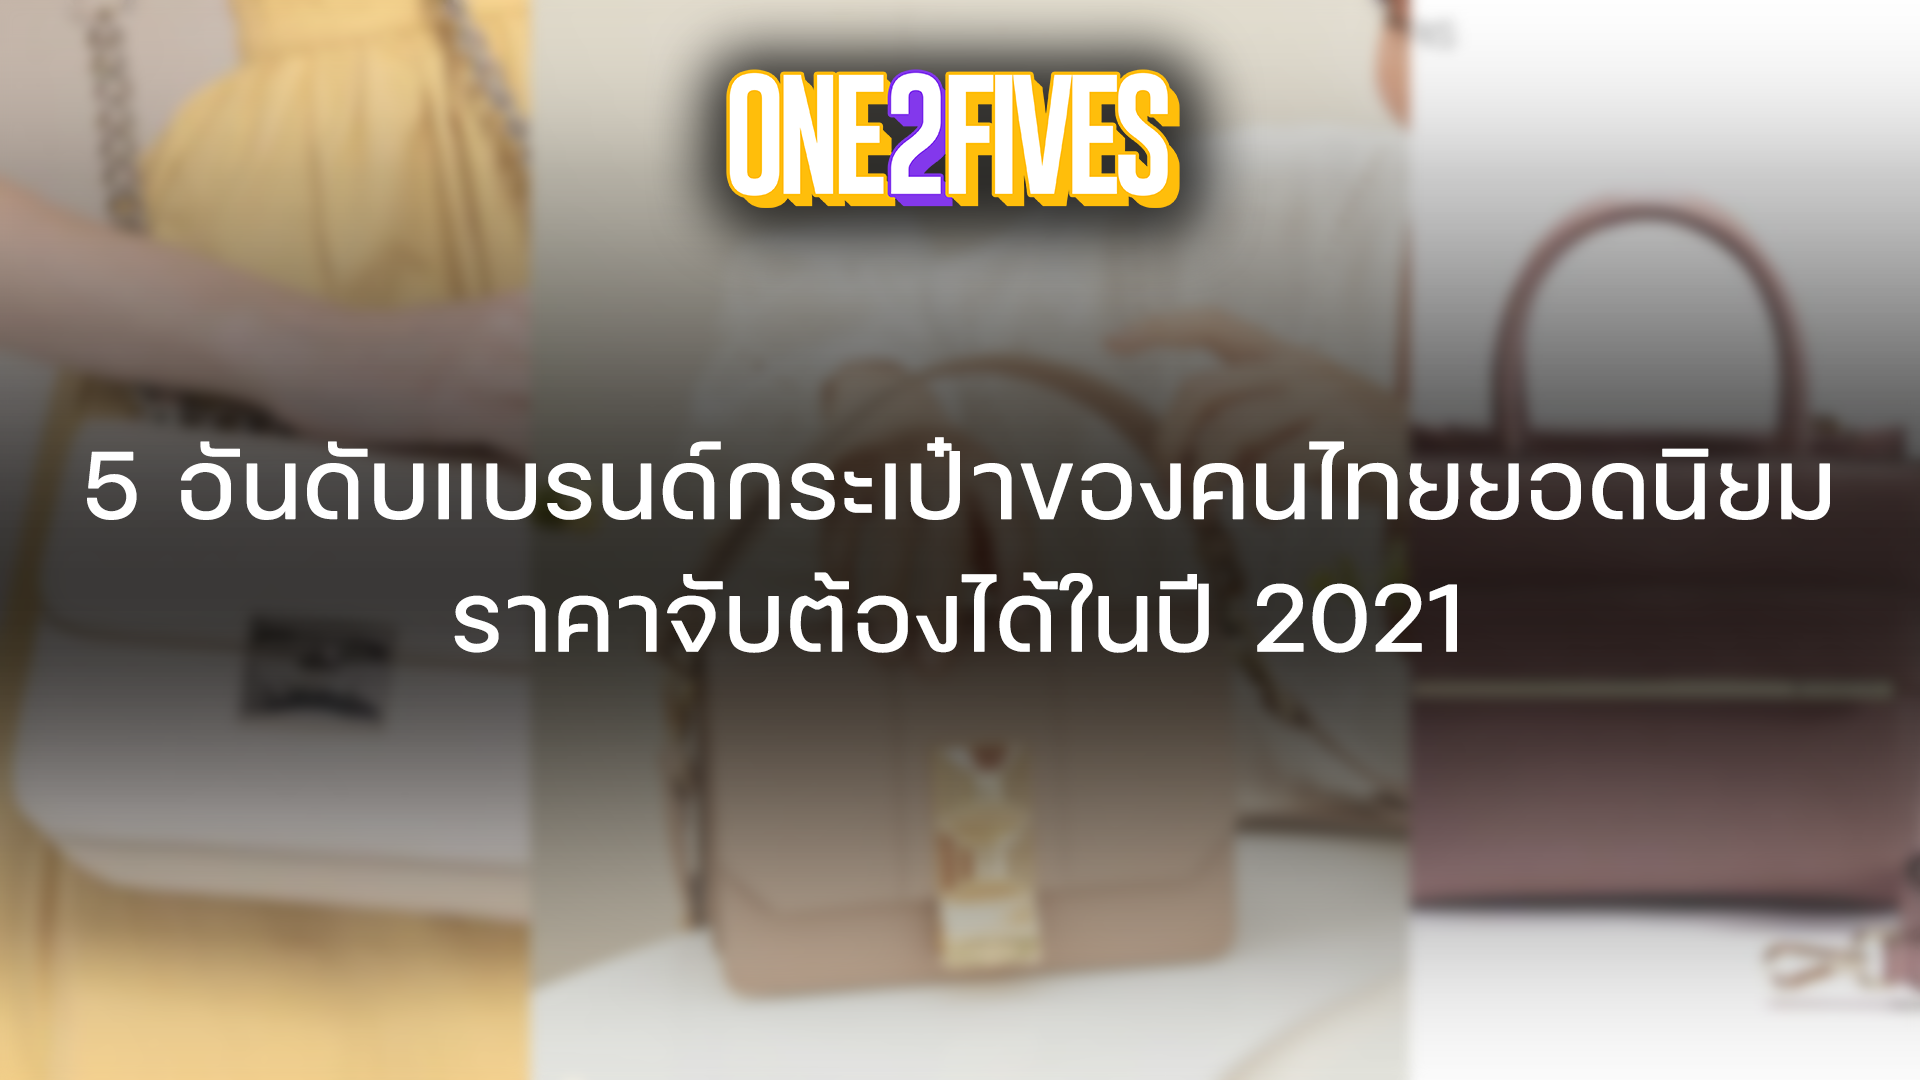 5 อันดับแบรนด์กระเป๋าของคนไทยยอดนิยม ราคาจับต้องได้ในปี 2021